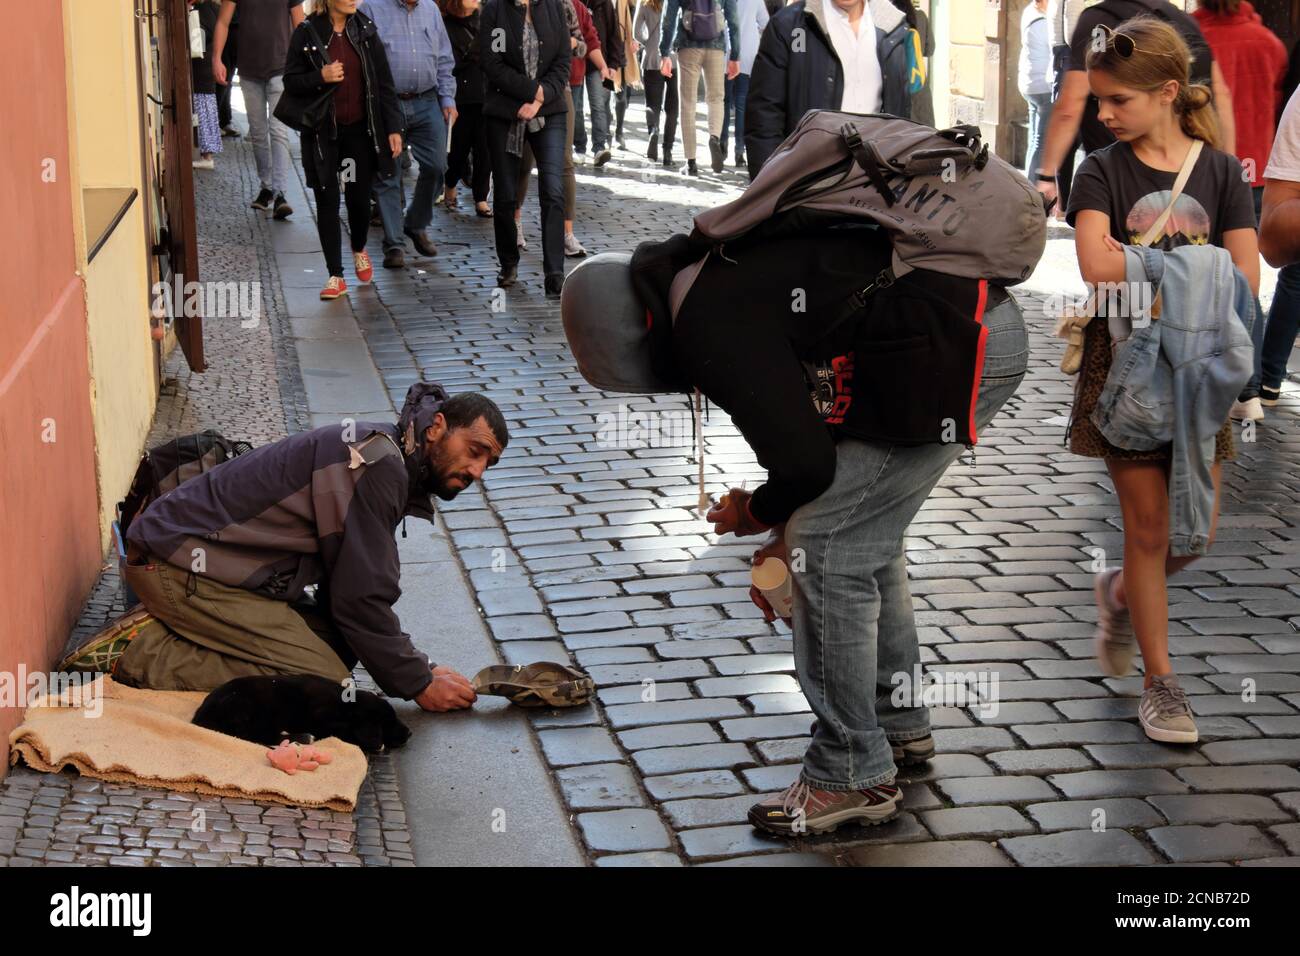 Praga, Repubblica Ceca, 12 ottobre 2019. Una ragazza guarda un ragazzo che chiacchiera con un mendicante. Il migrante si mita per la strada di una città europea. Foto Stock